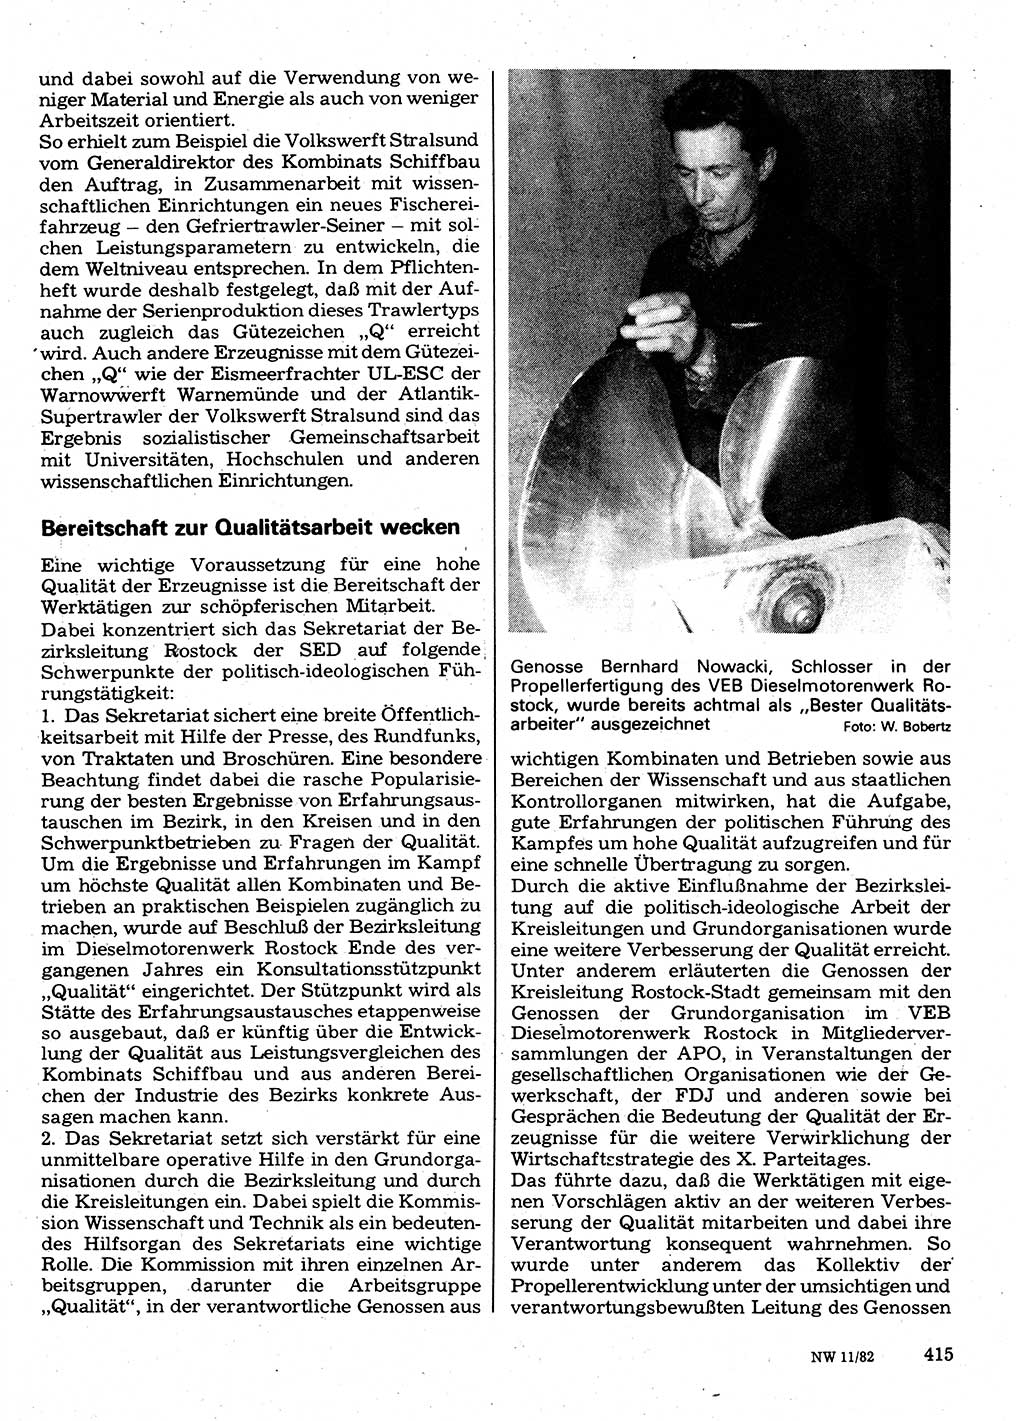 Neuer Weg (NW), Organ des Zentralkomitees (ZK) der SED (Sozialistische Einheitspartei Deutschlands) für Fragen des Parteilebens, 37. Jahrgang [Deutsche Demokratische Republik (DDR)] 1982, Seite 415 (NW ZK SED DDR 1982, S. 415)